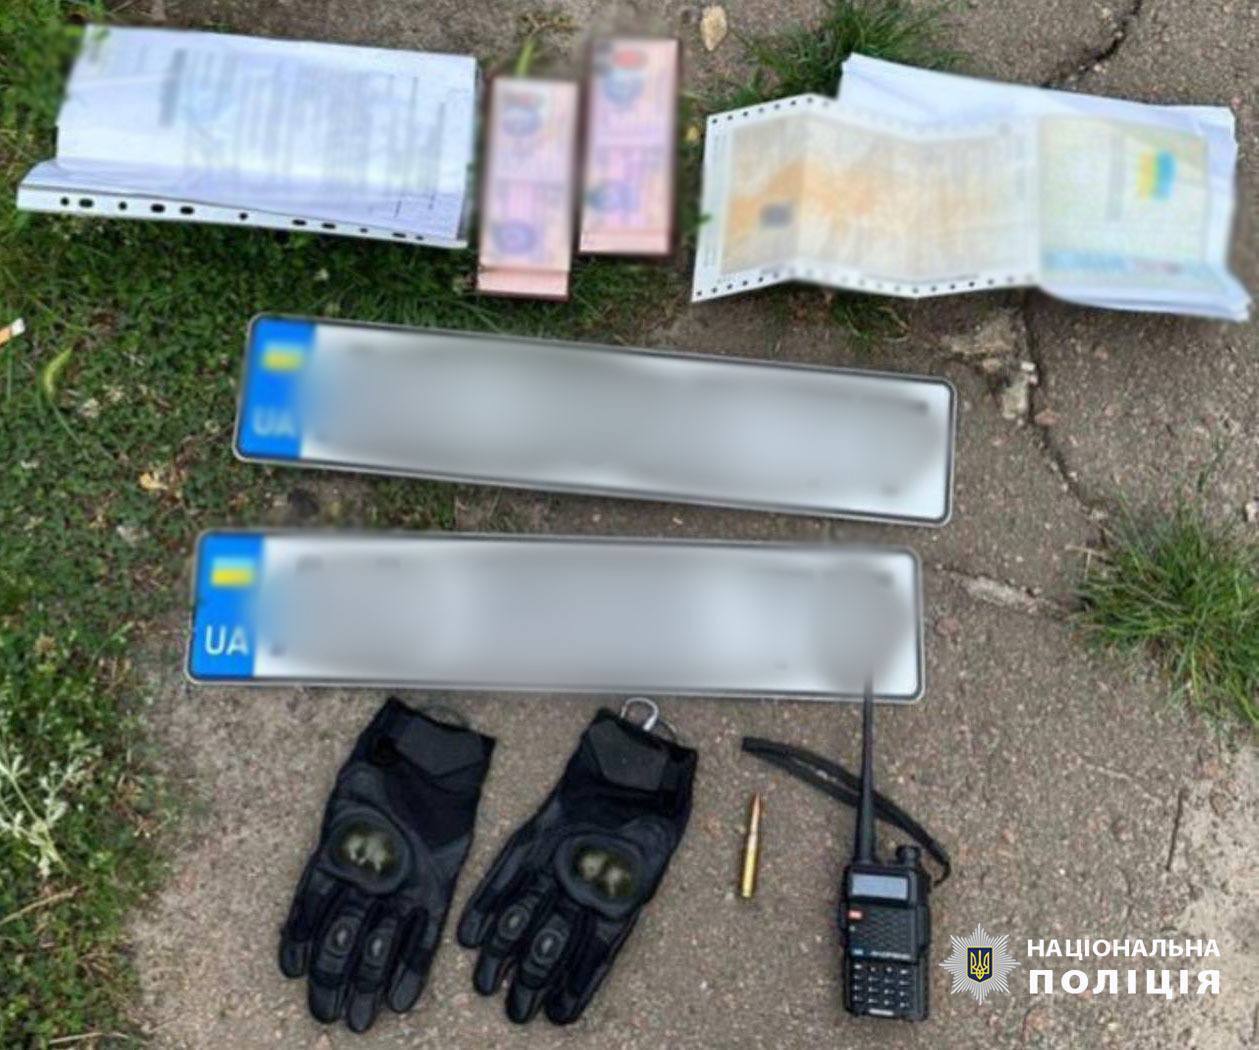 У Києві двоє "правоохоронців" викрали лікаря-кардіолога та вимагали у нього 2 млн грн. Подробиці, фото і відео